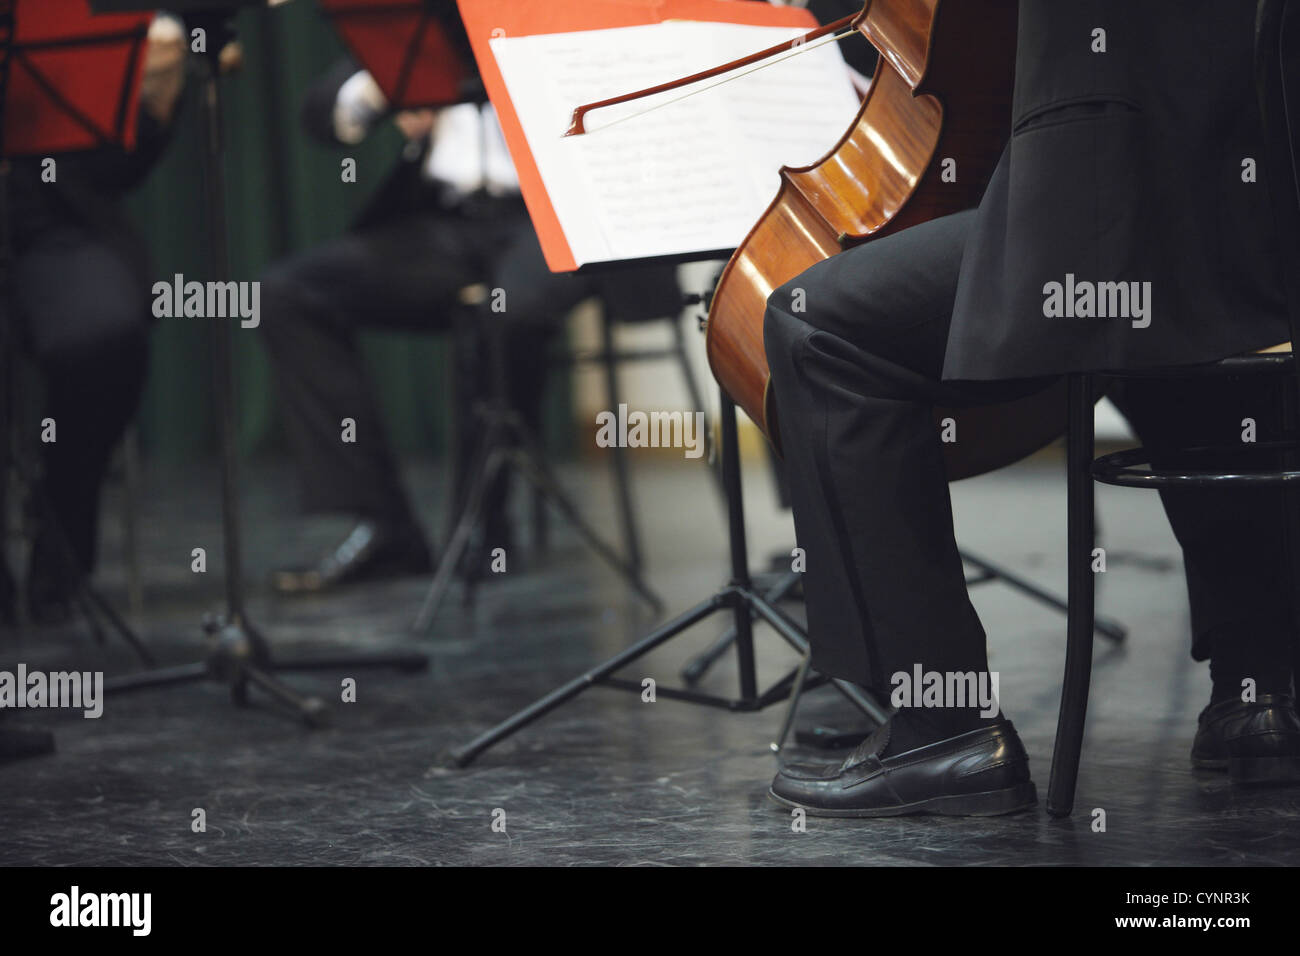 Cello musician at the concert Stock Photo